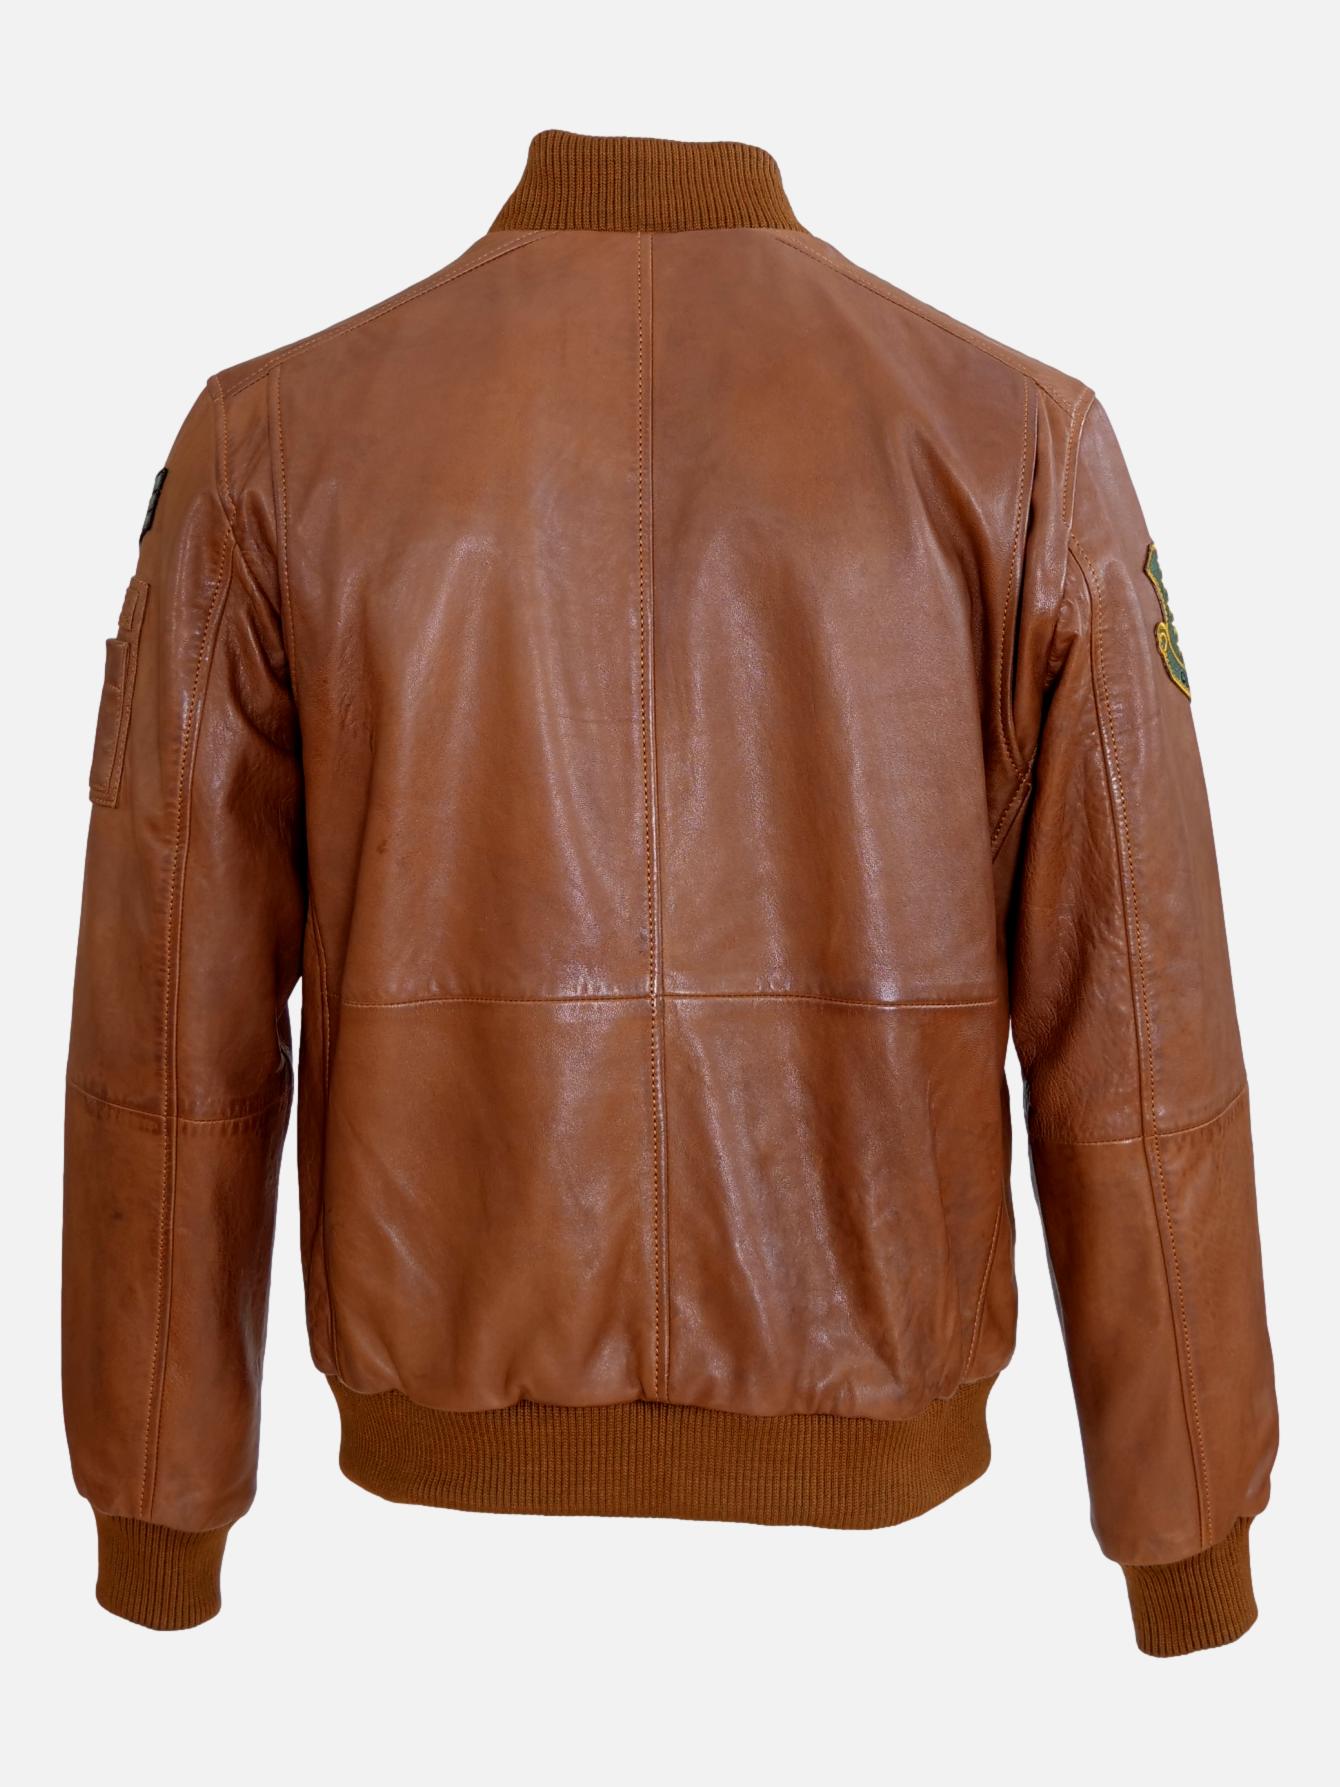 M-123052, 67 cm. - Lamb Leather - Man - Cognac